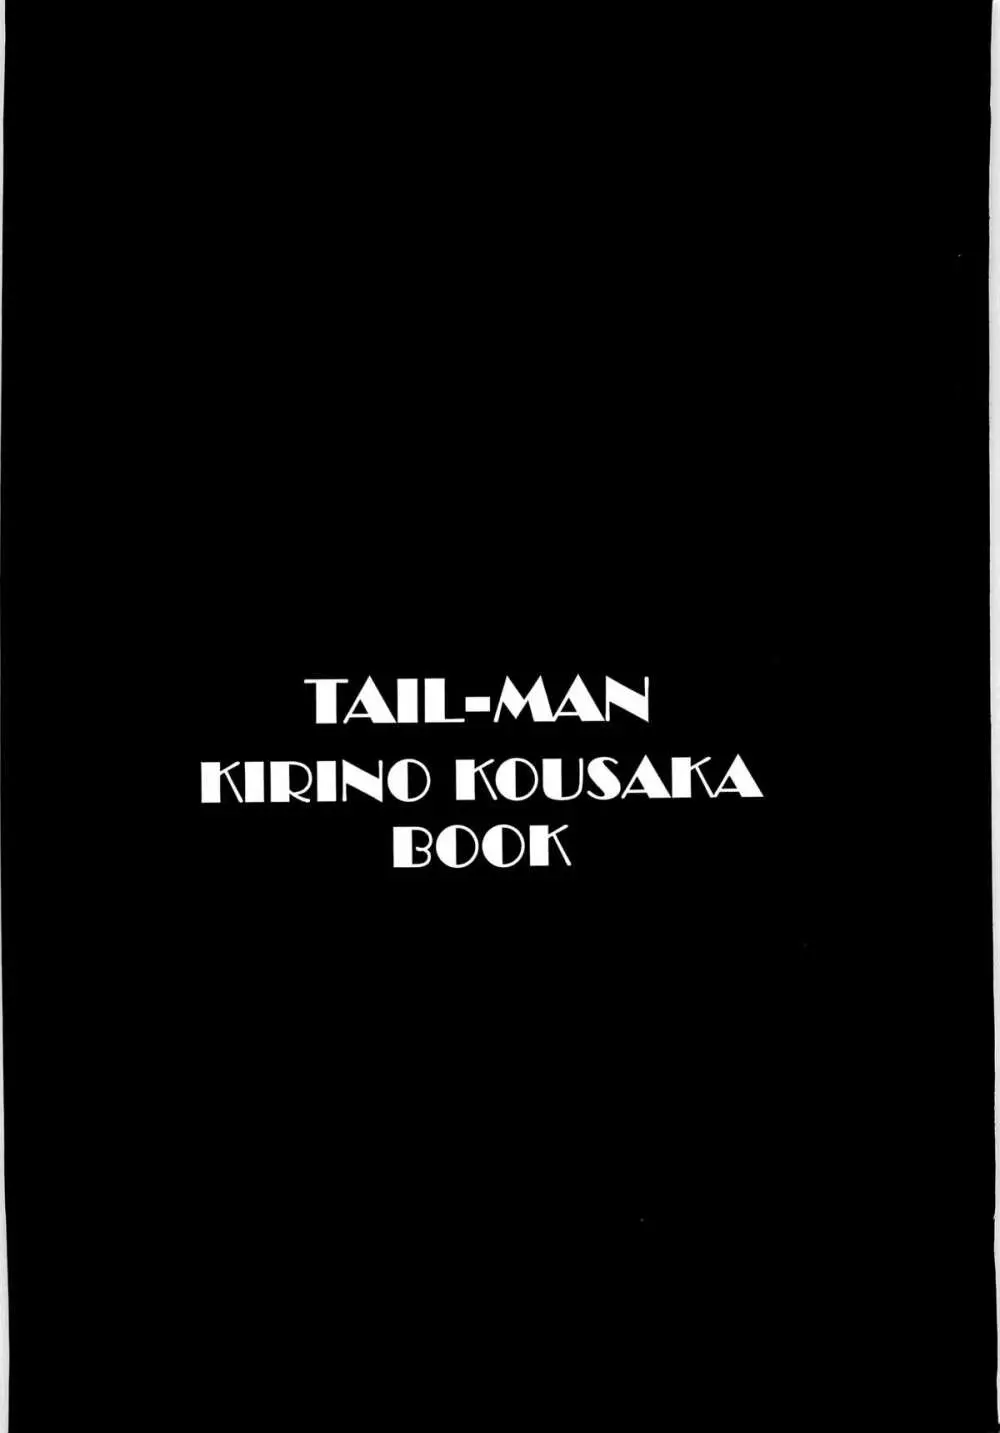 TAIL-MAN KIRINO KOUSAKA BOOK 2ページ